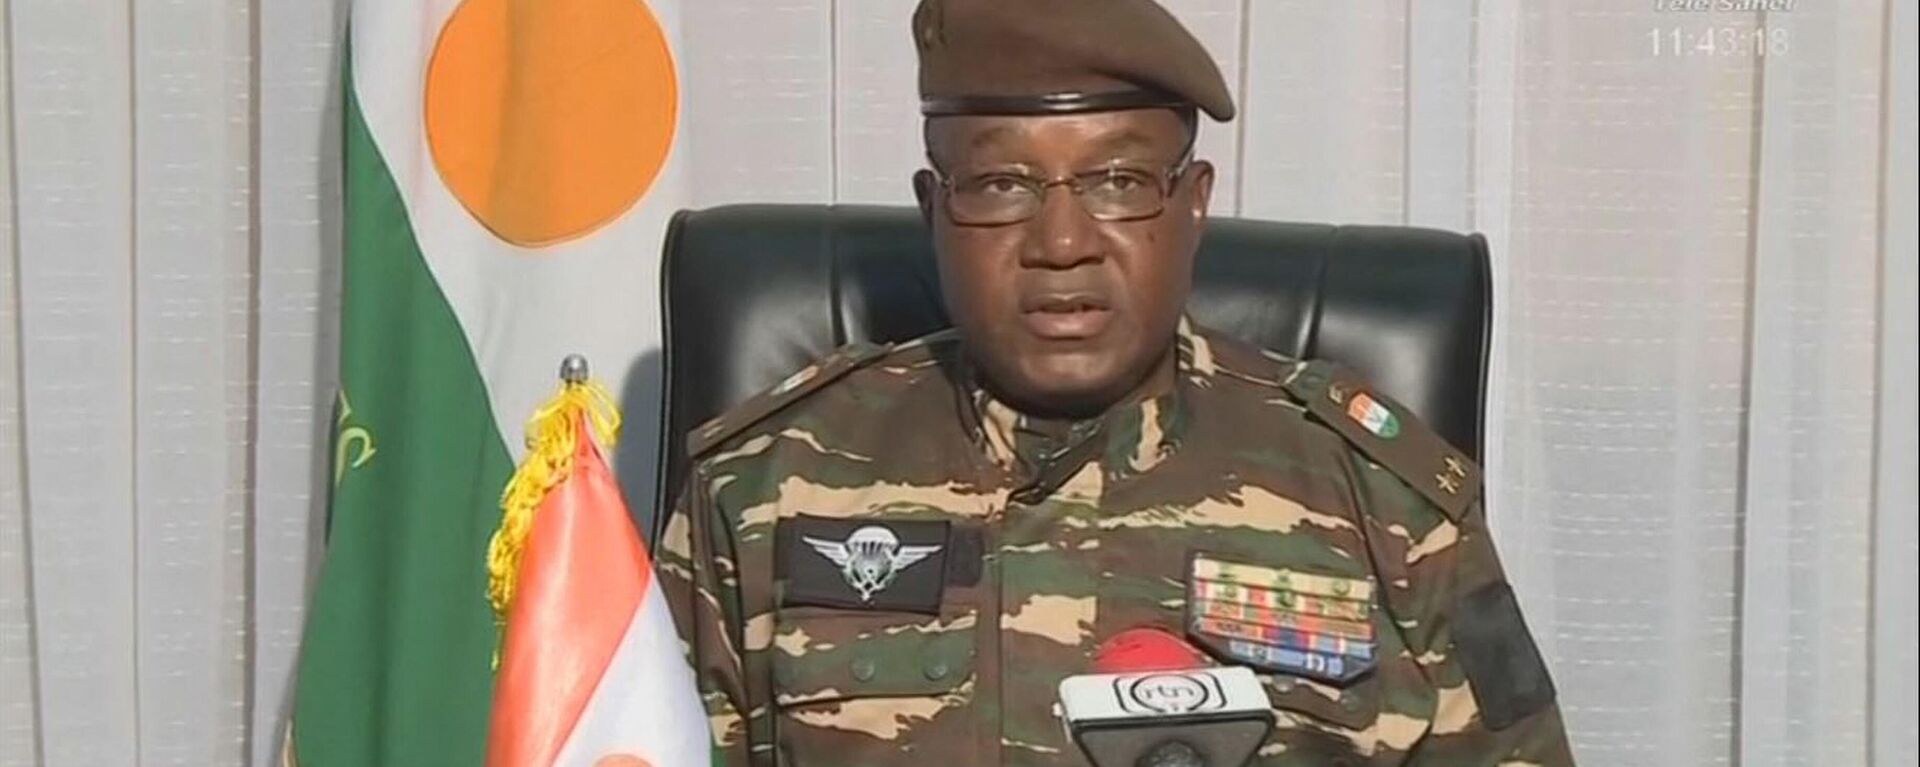 El general rebelde Omar Abdourahamane Tchiani que se proclamó como líder de la junta golpista en Níger, el 28 de julio 2023 - Sputnik Mundo, 1920, 10.08.2023